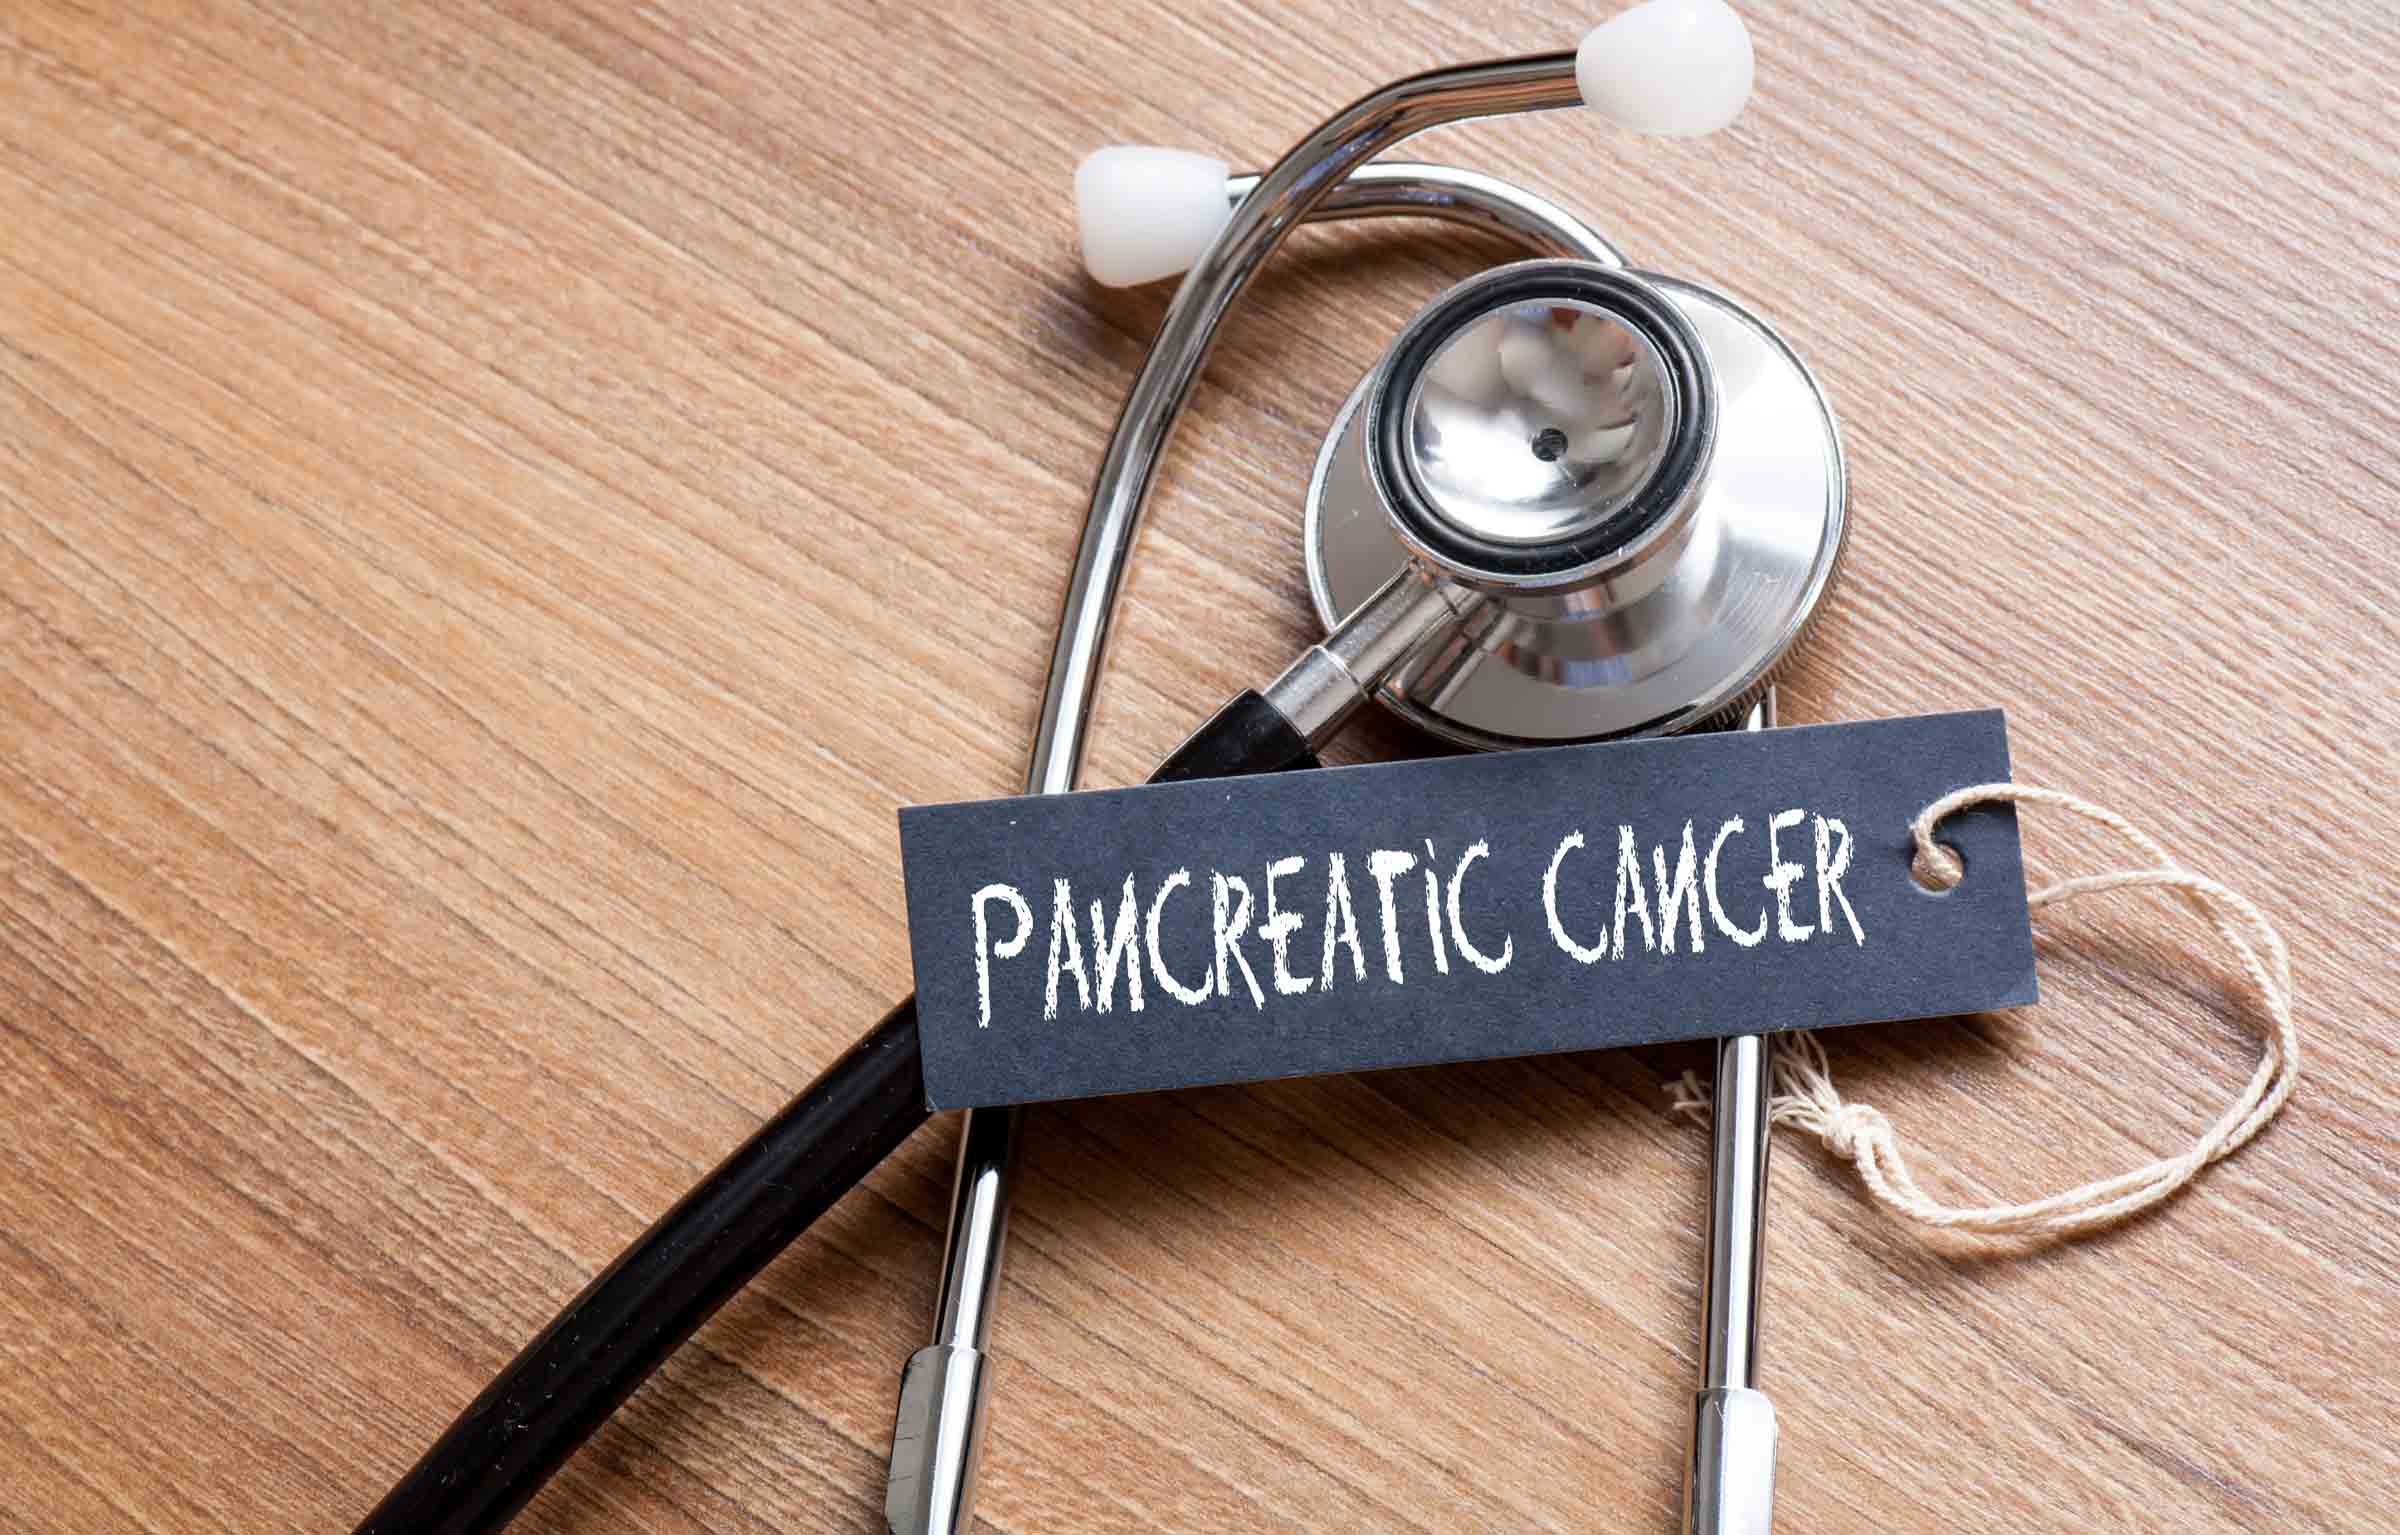 pancreatic-cancer-%e1%9e%98%e1%9e%a0%e1%9e%b6%e1%9e%9a%e1%9e%b8%e1%9e%80%e2%80%8b%e1%9e%9b%e1%9f%86%e1%9e%96%e1%9f%82%e1%9e%84